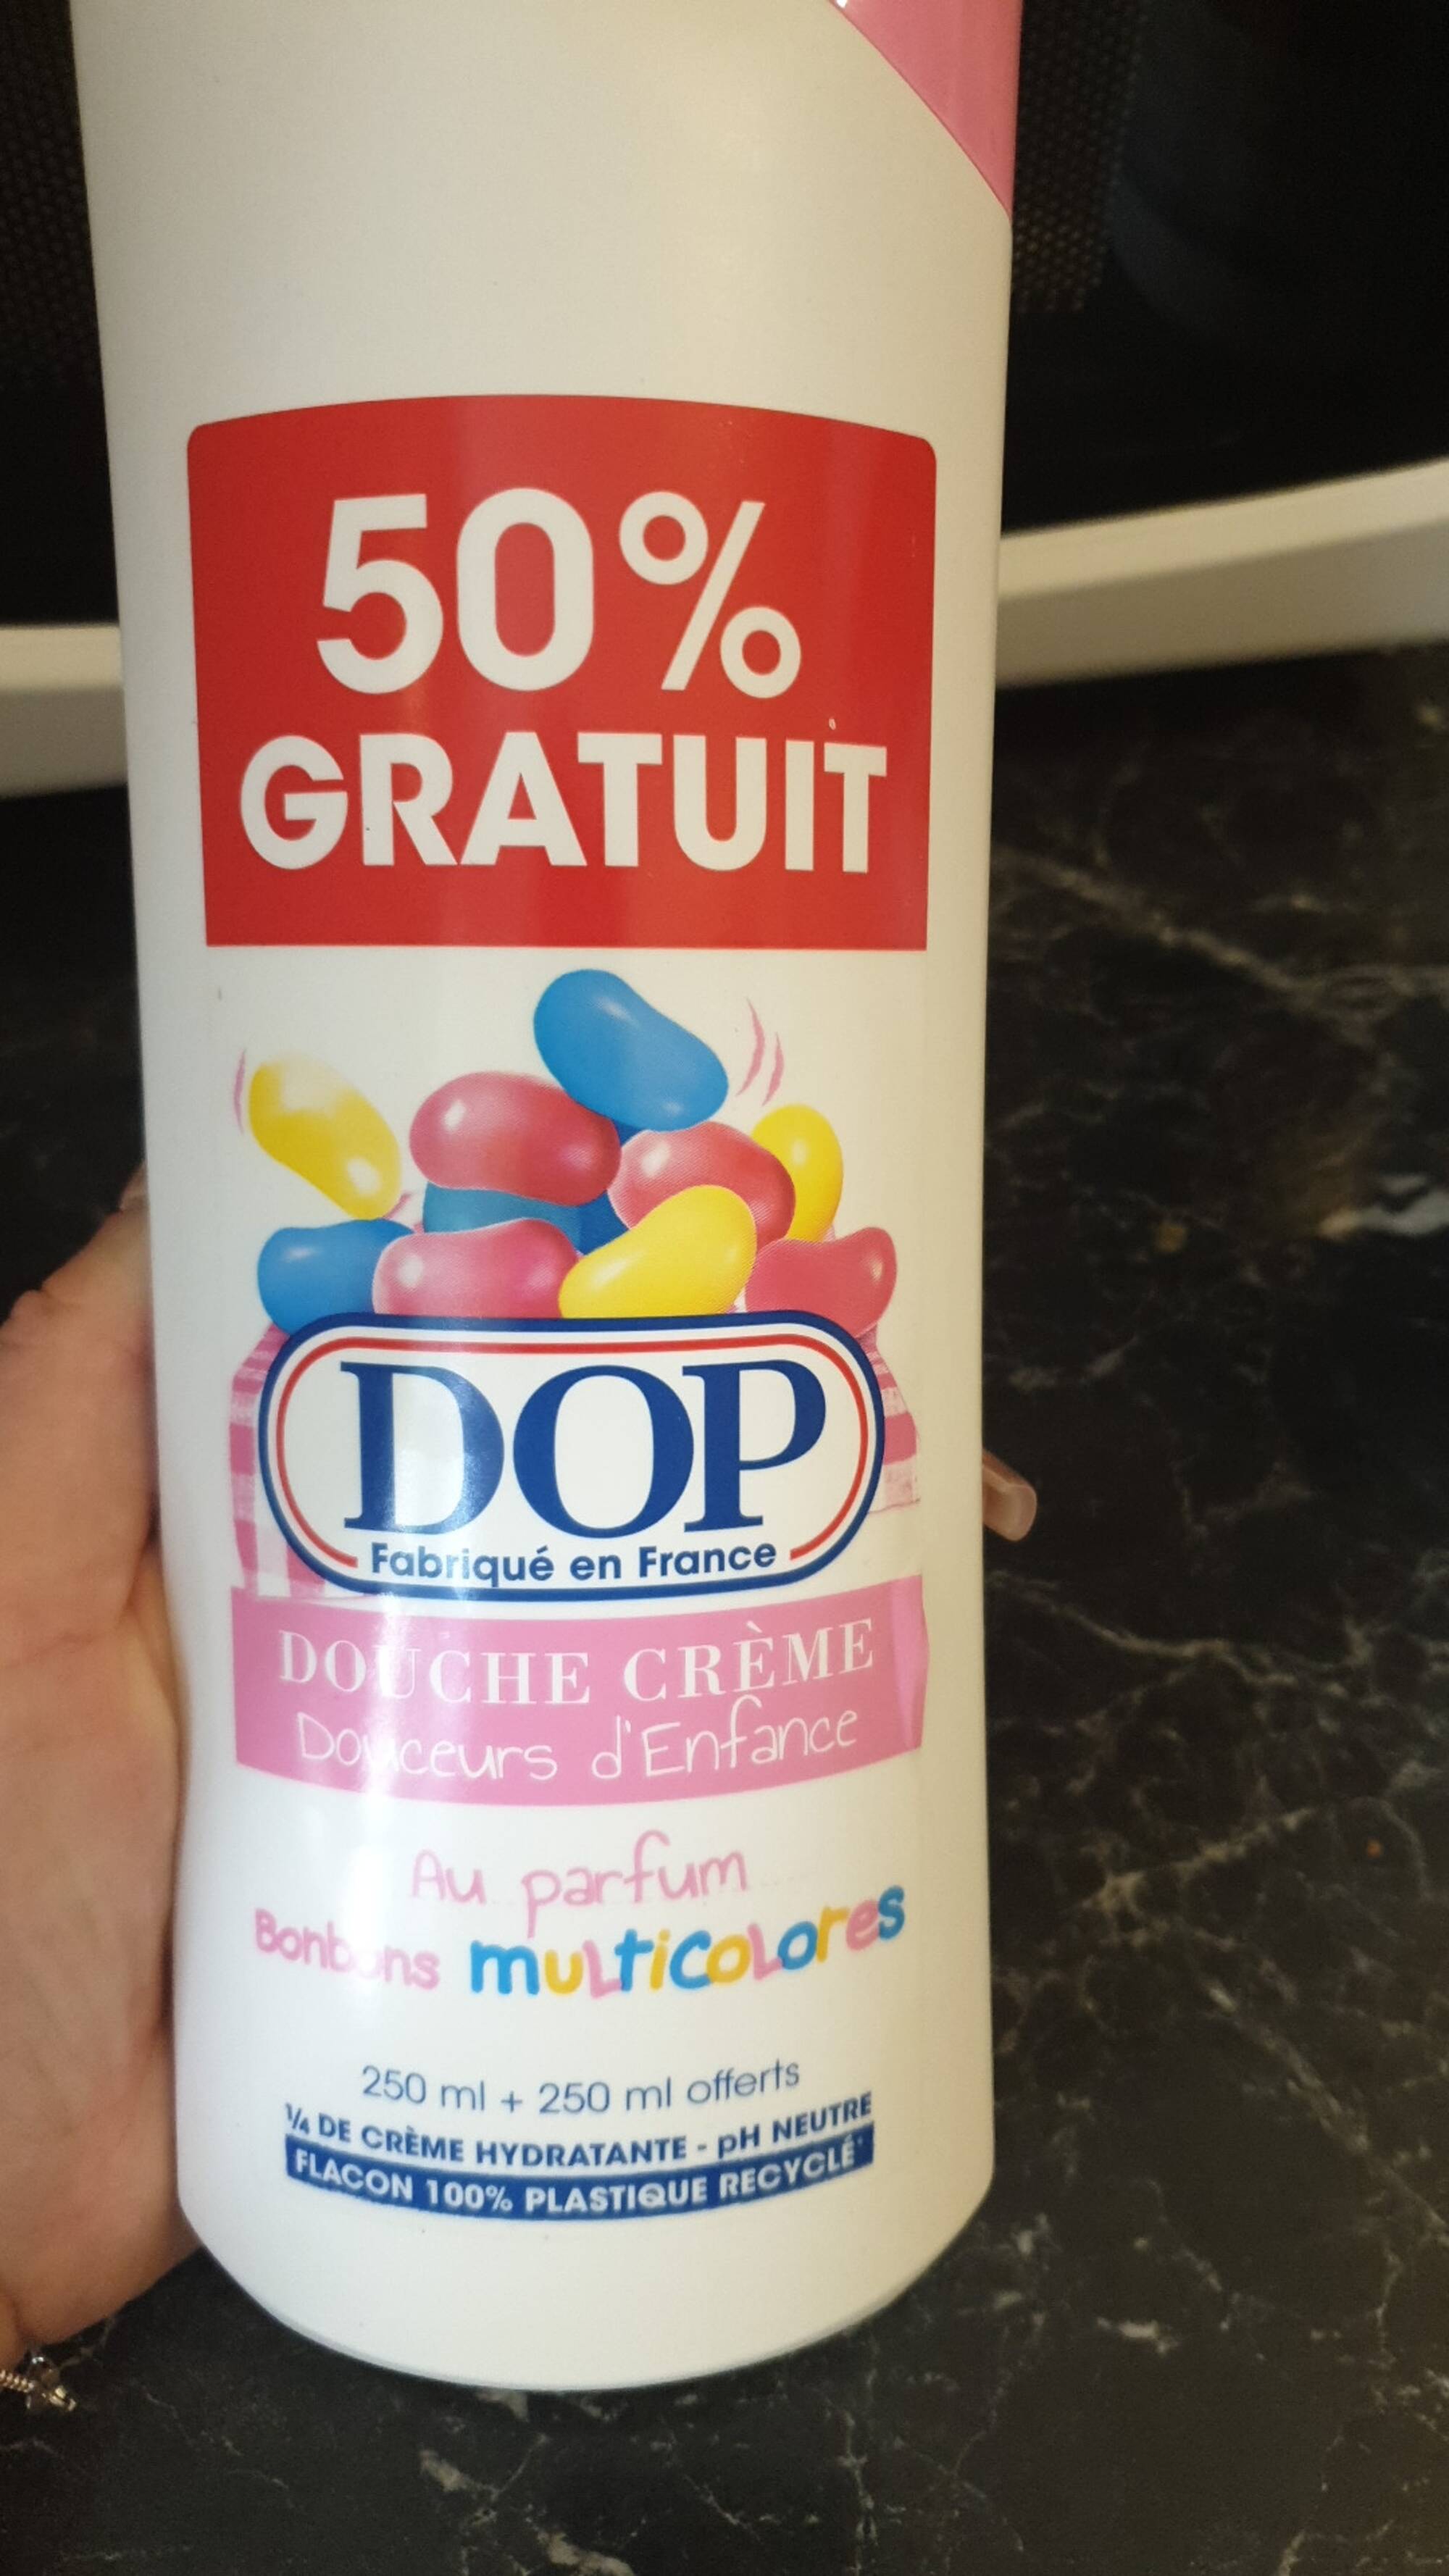 DOP - Douche crème Douceurs d'enfance au parfum bonbons multicolores